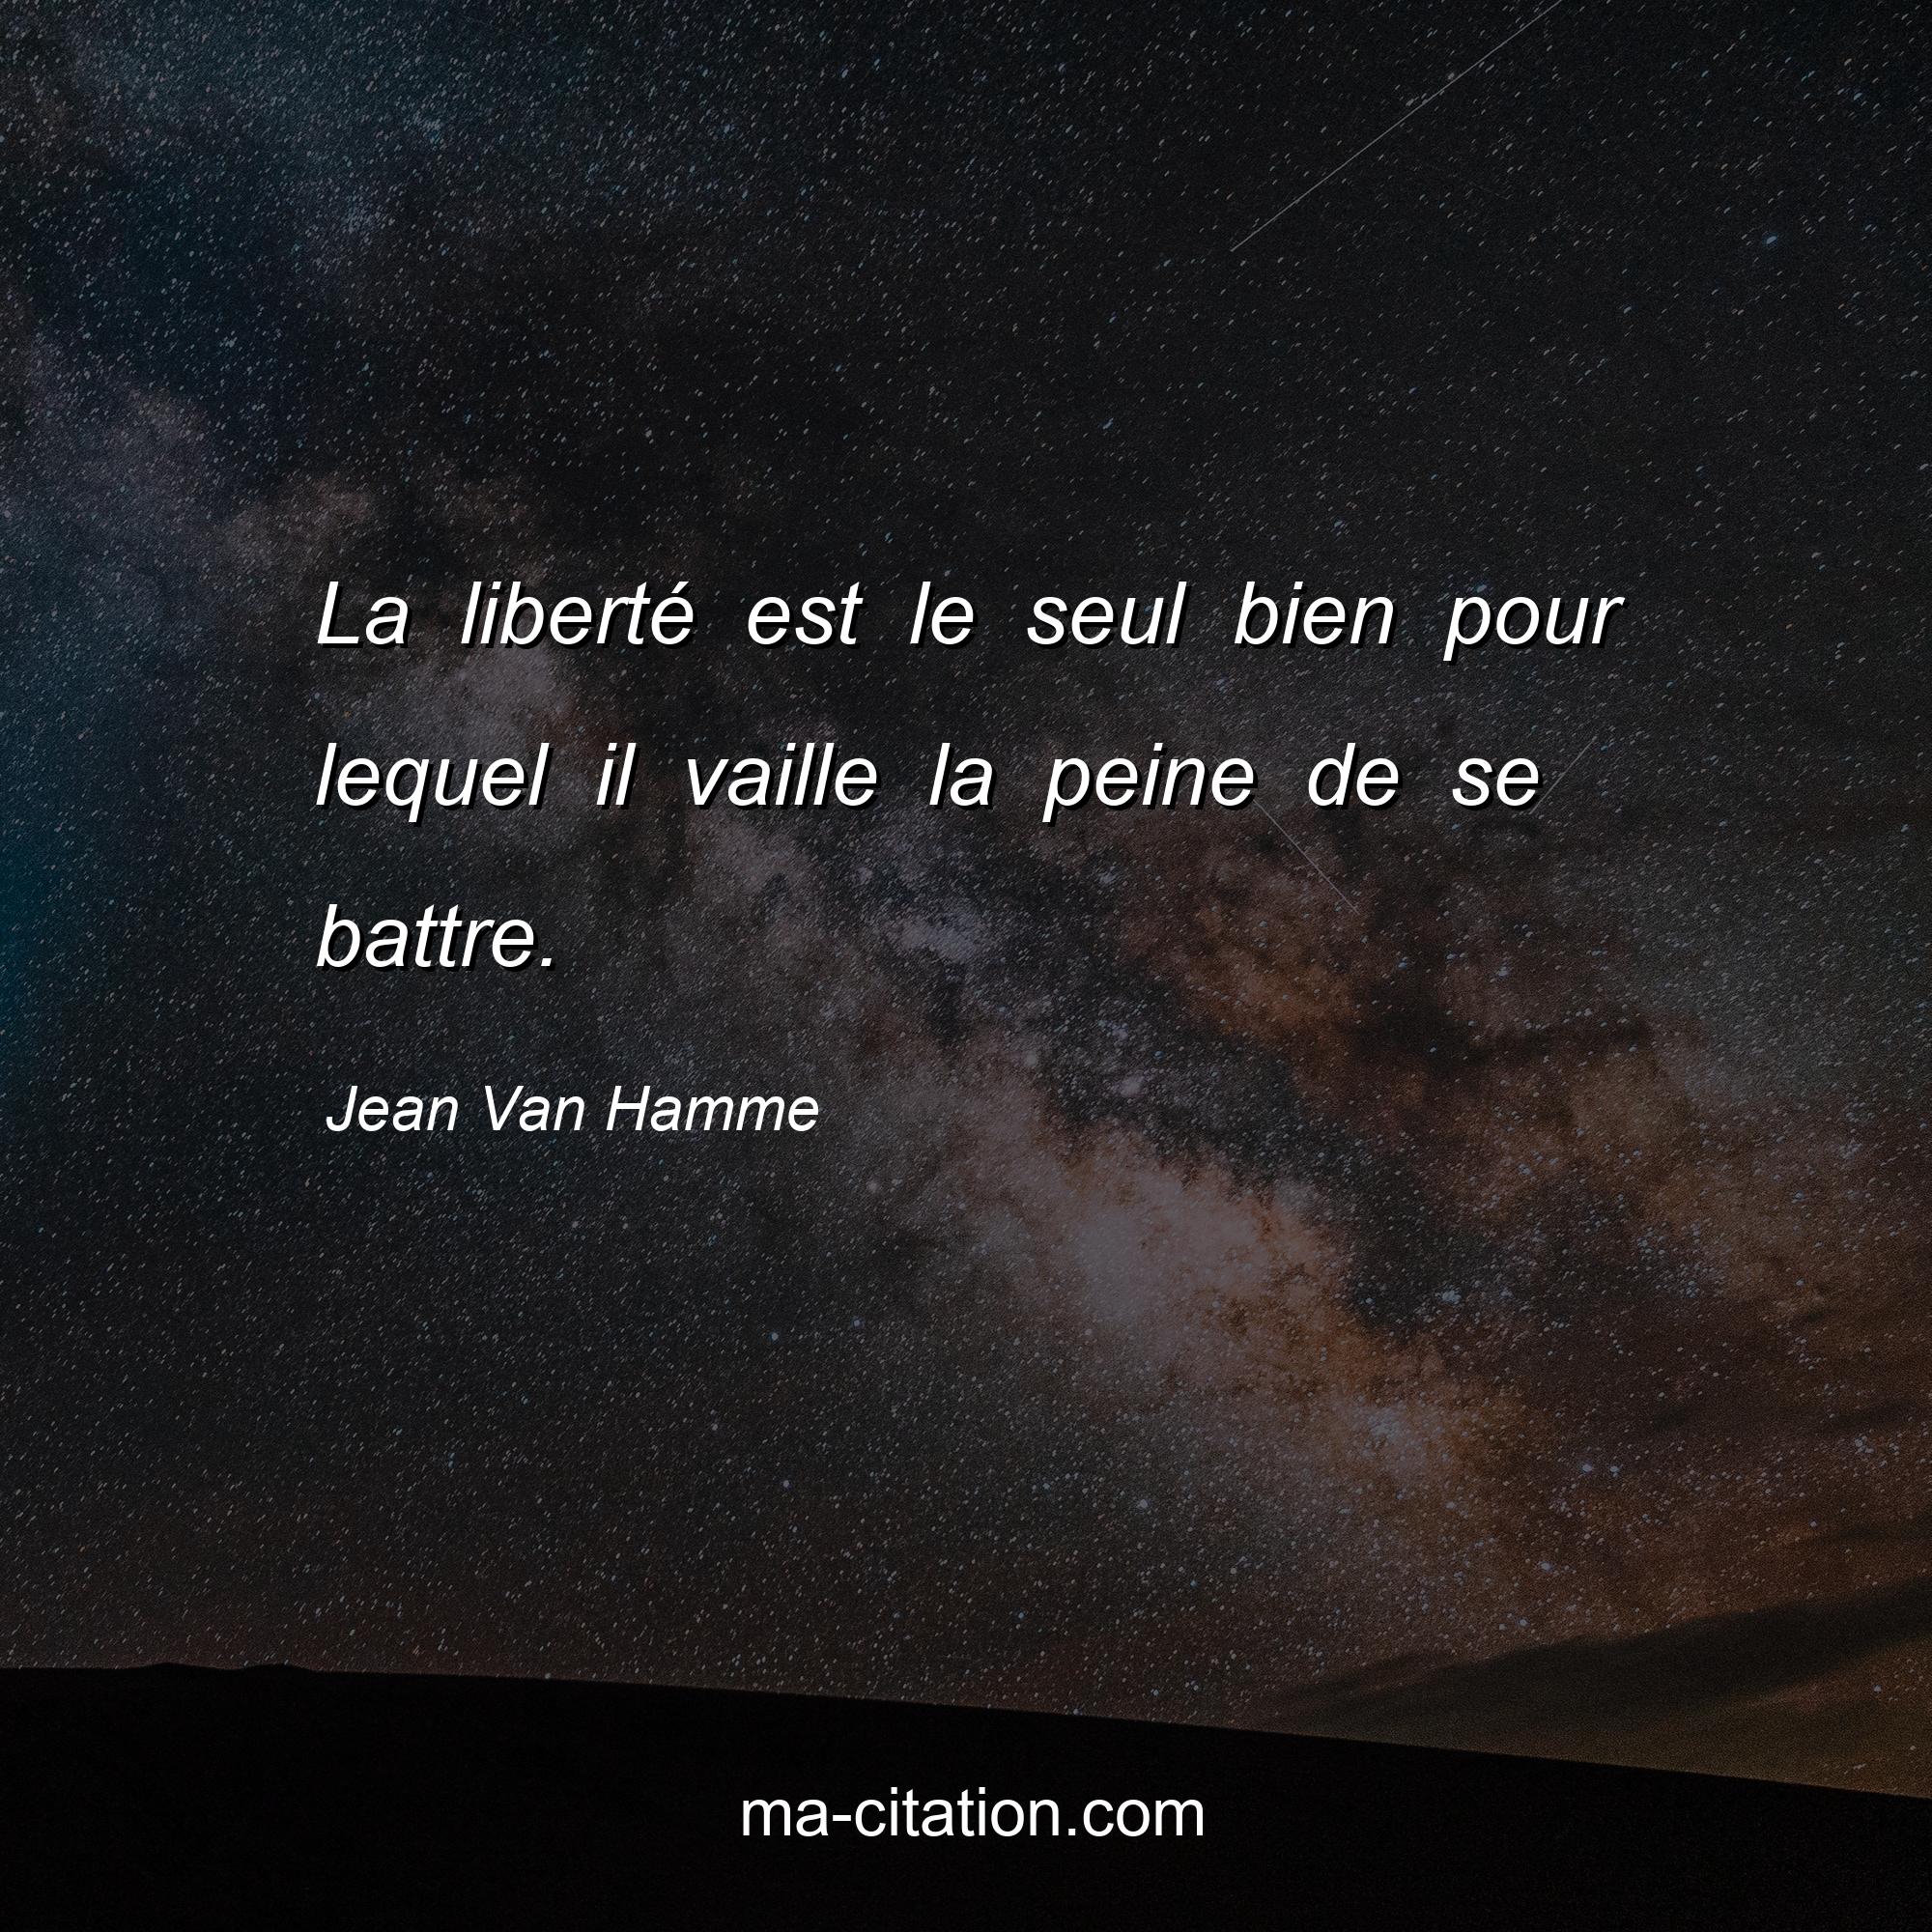 Jean Van Hamme : La liberté est le seul bien pour lequel il vaille la peine de se battre.